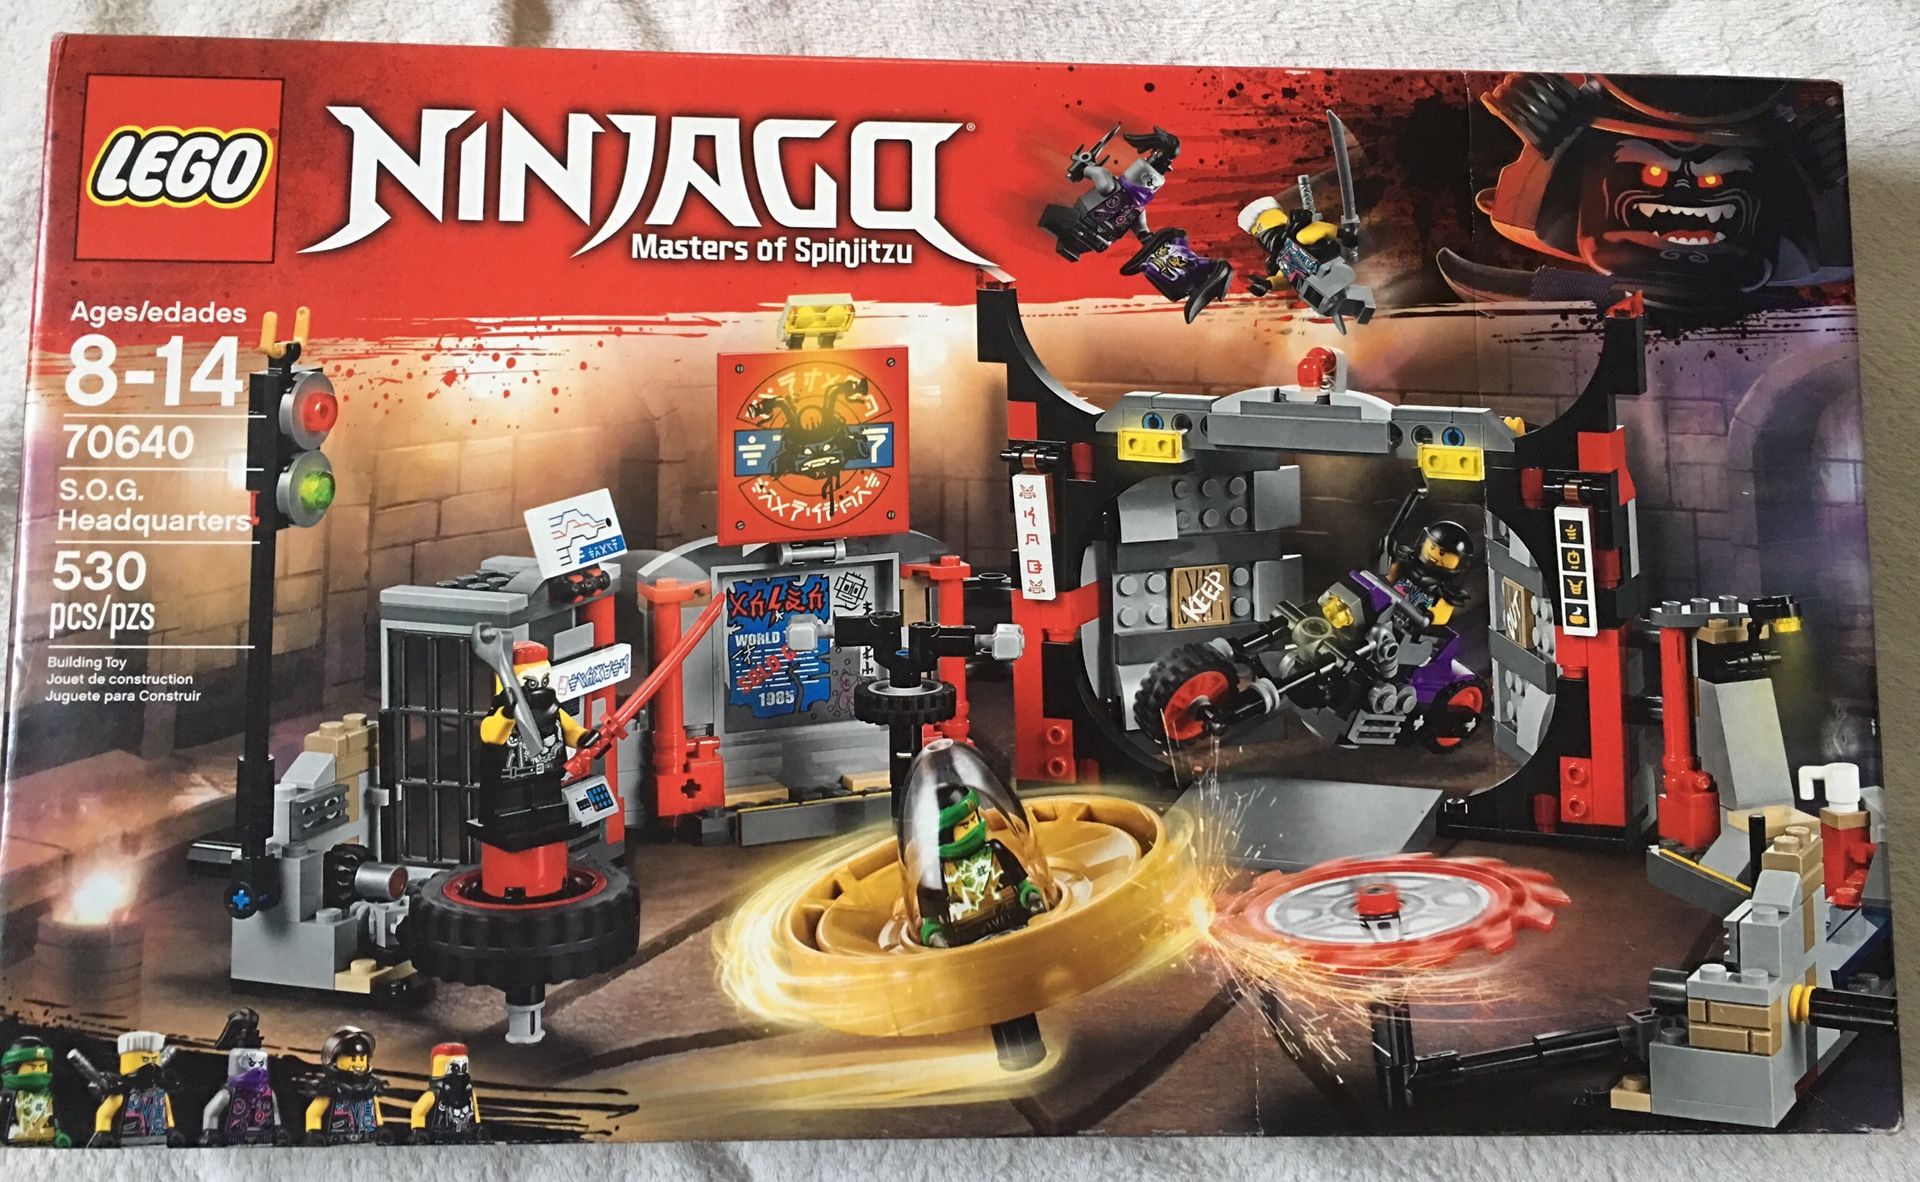 LEGO 70640 NEW Ninjago S.O.G. Headquarters $20 (530 pcs)